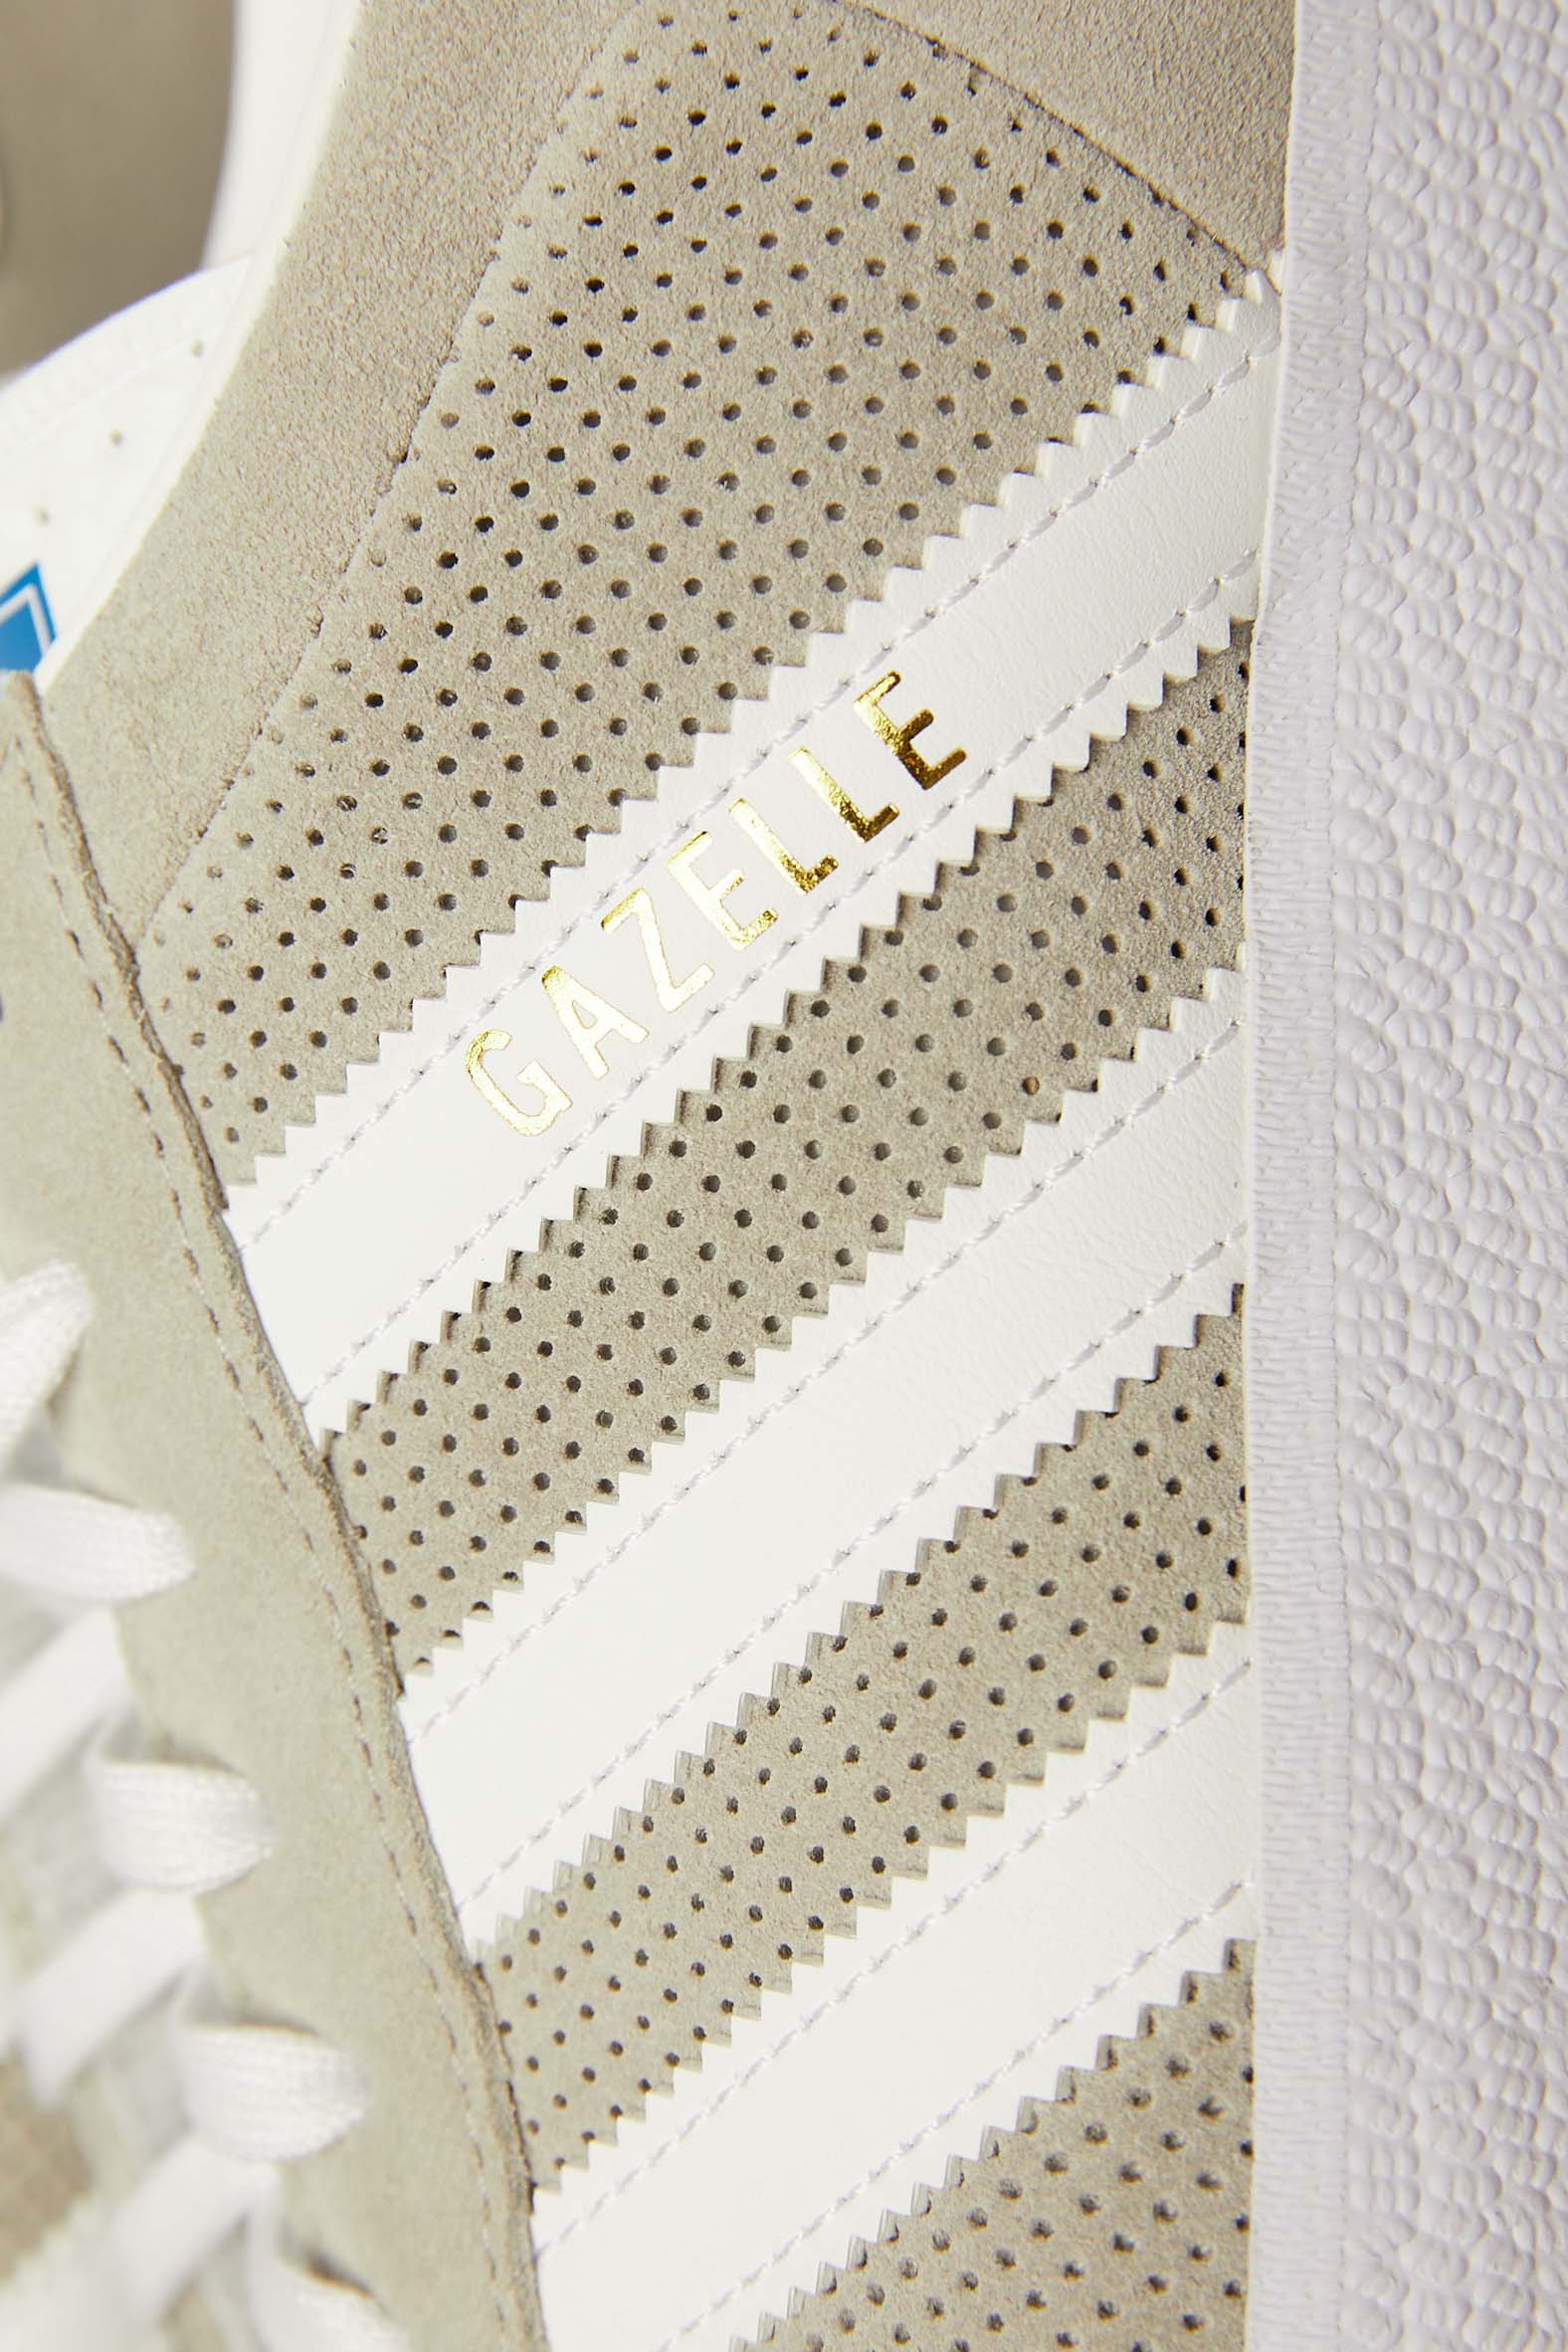 Adidas Gazelle 'Grey/White/Gold'